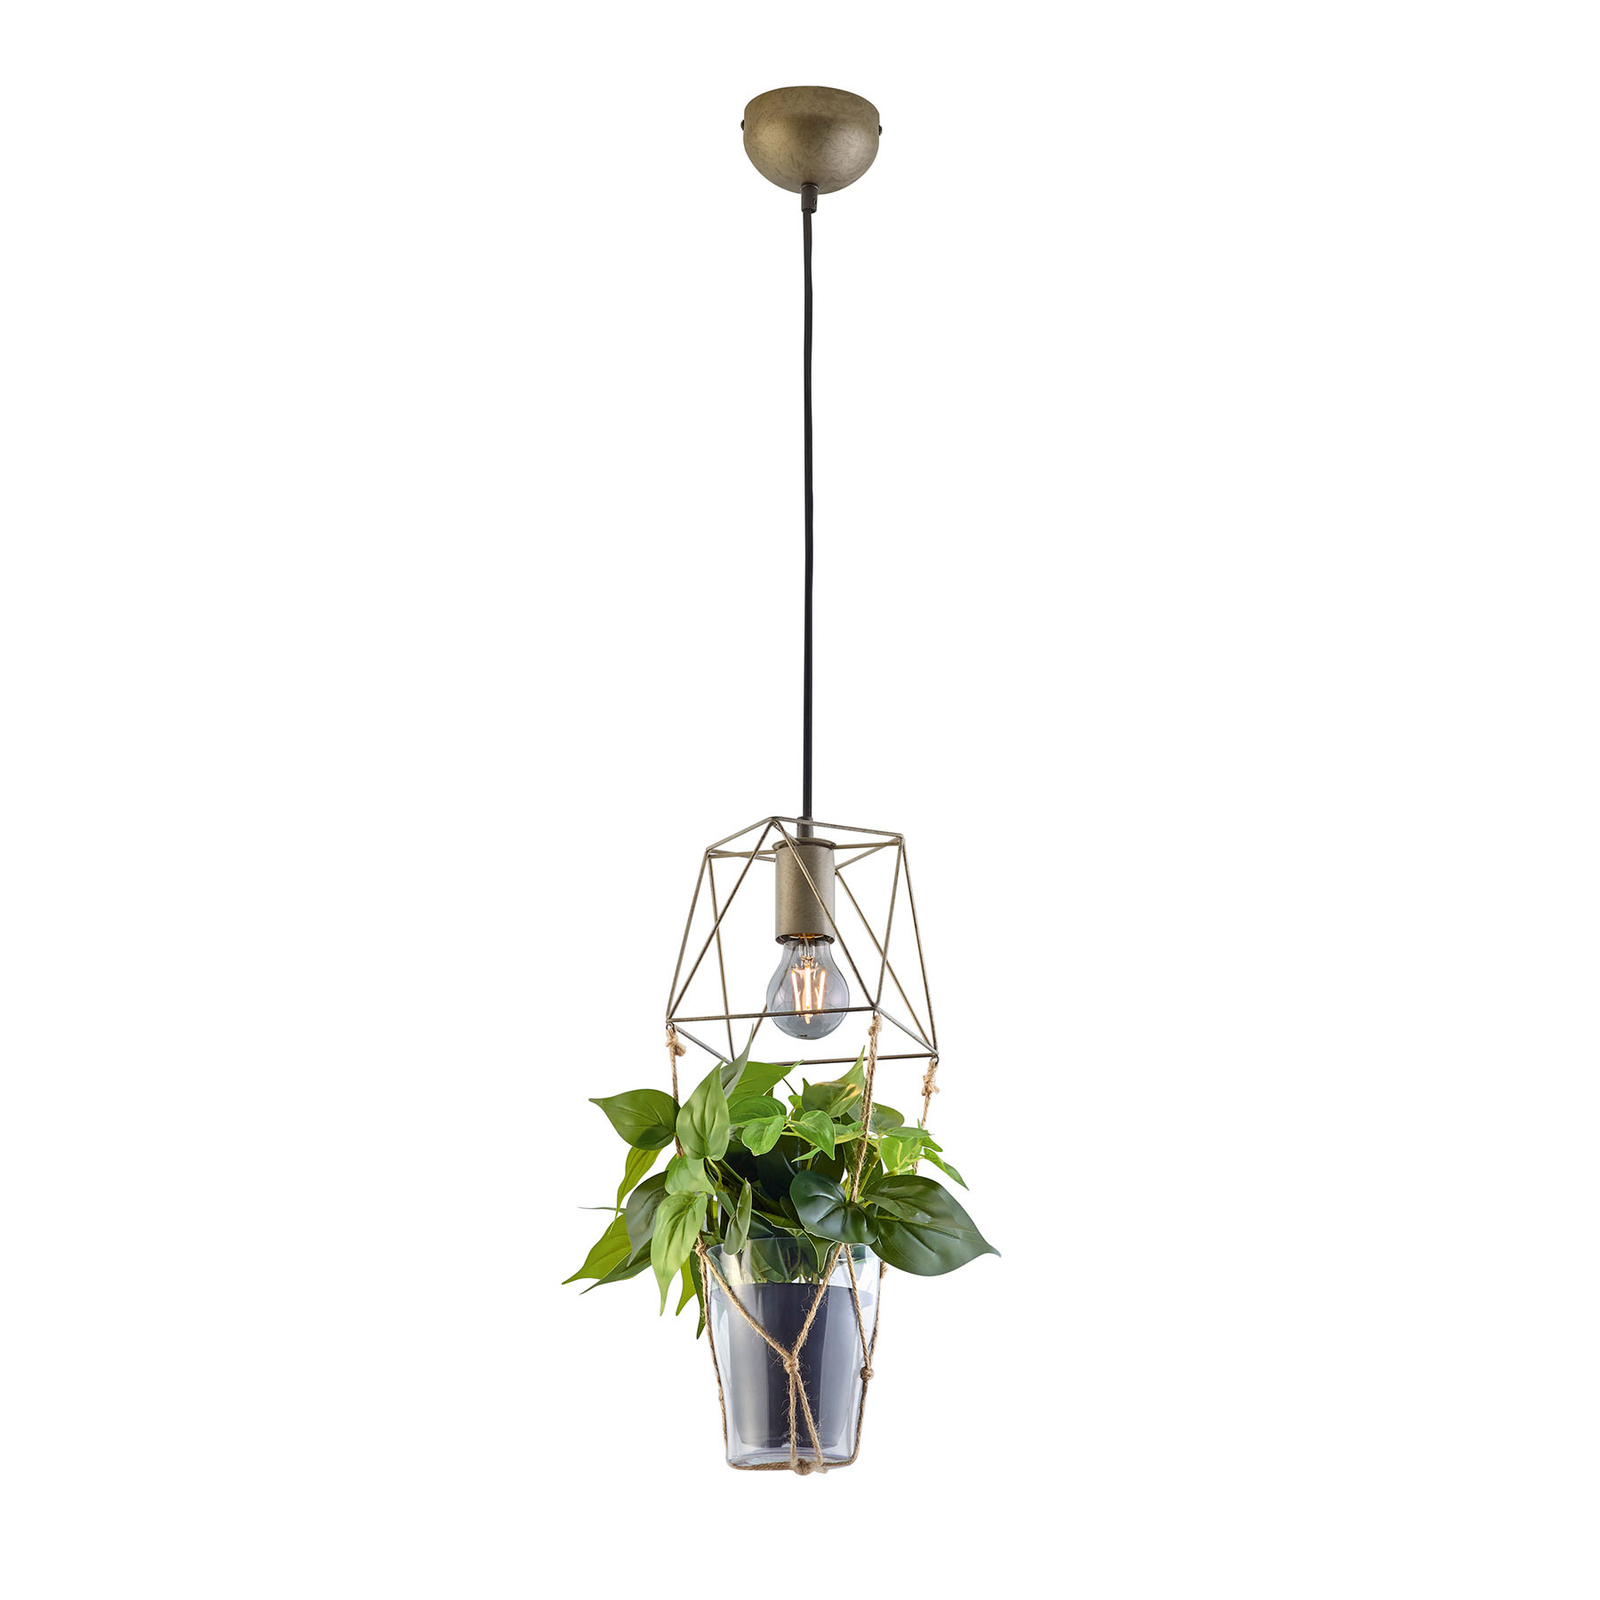 Vakman Authenticatie Perfect Hanglamp Plant, 1-lamp glazen inzet v. decoratie | Lampen24.be